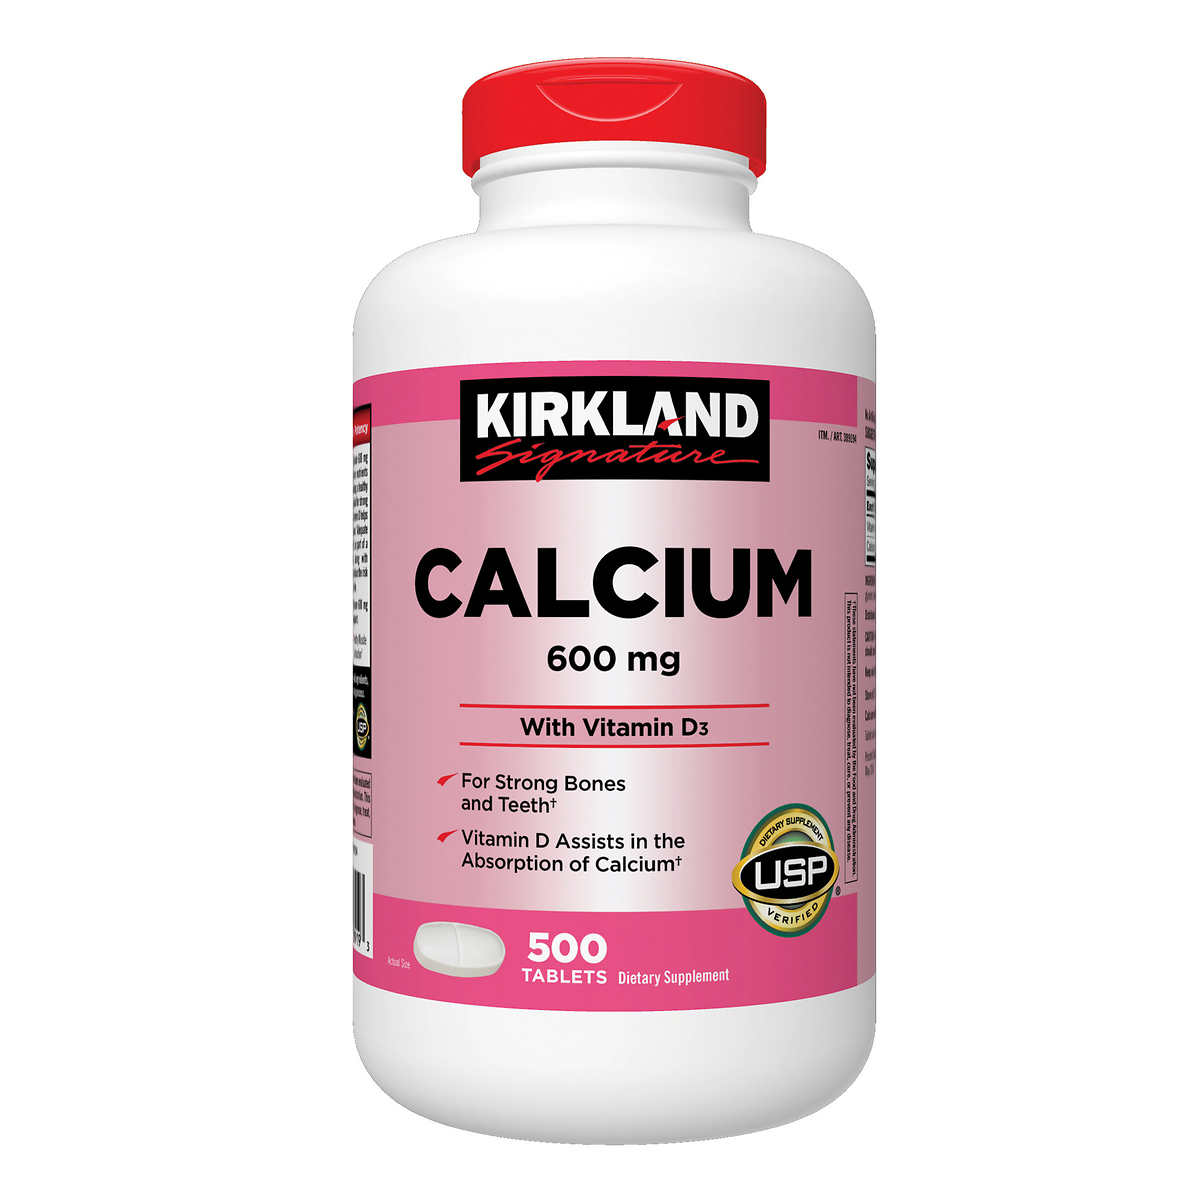 Kirkland Signature Calcium 600 mg. with Vitamin D3, 500 Tablets Costco